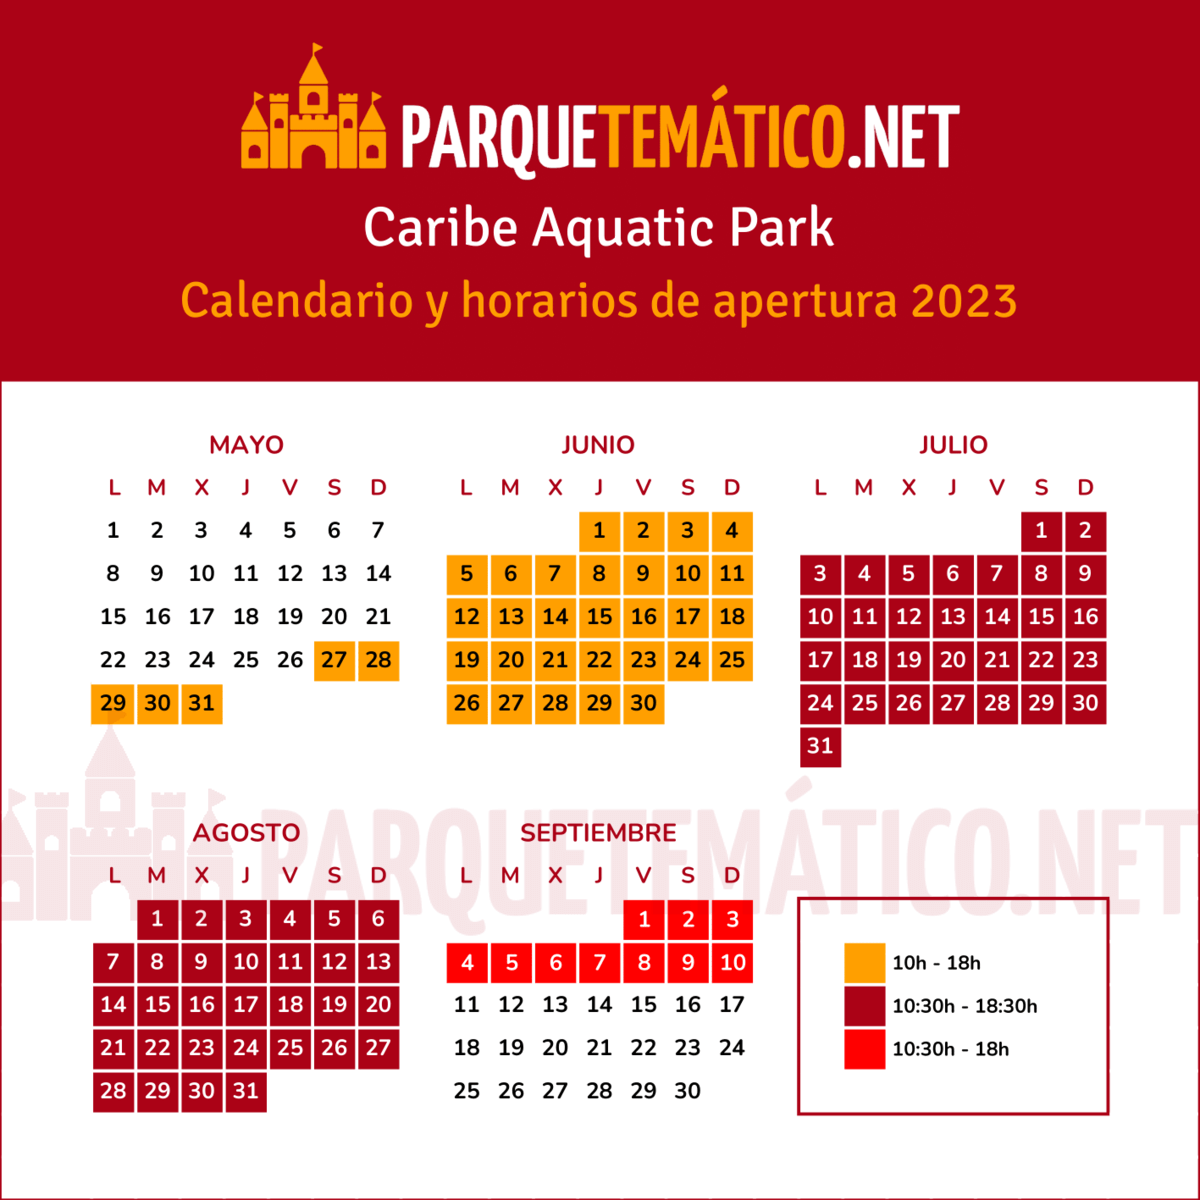 Calendario y horarios PortAventura 2023 - Caribe Aquatic Park